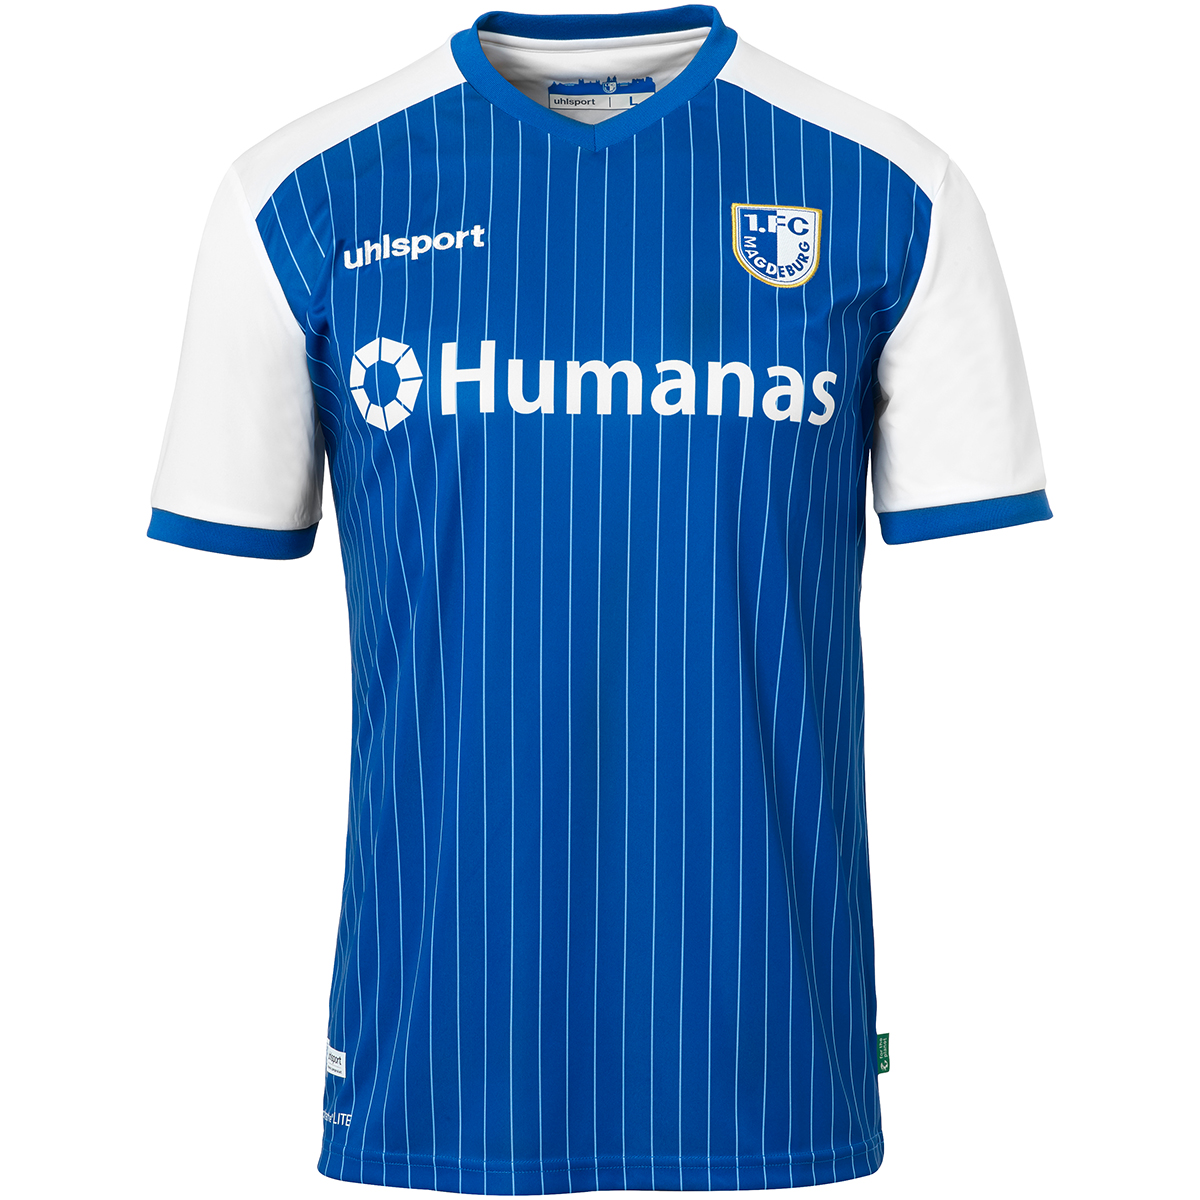 Uhlsport Uhlsport Fcm Tee-Shirt Spirit 21 22 Bleu 1.FC Magdeburg Fan-Shirt Jersey S-4XL 